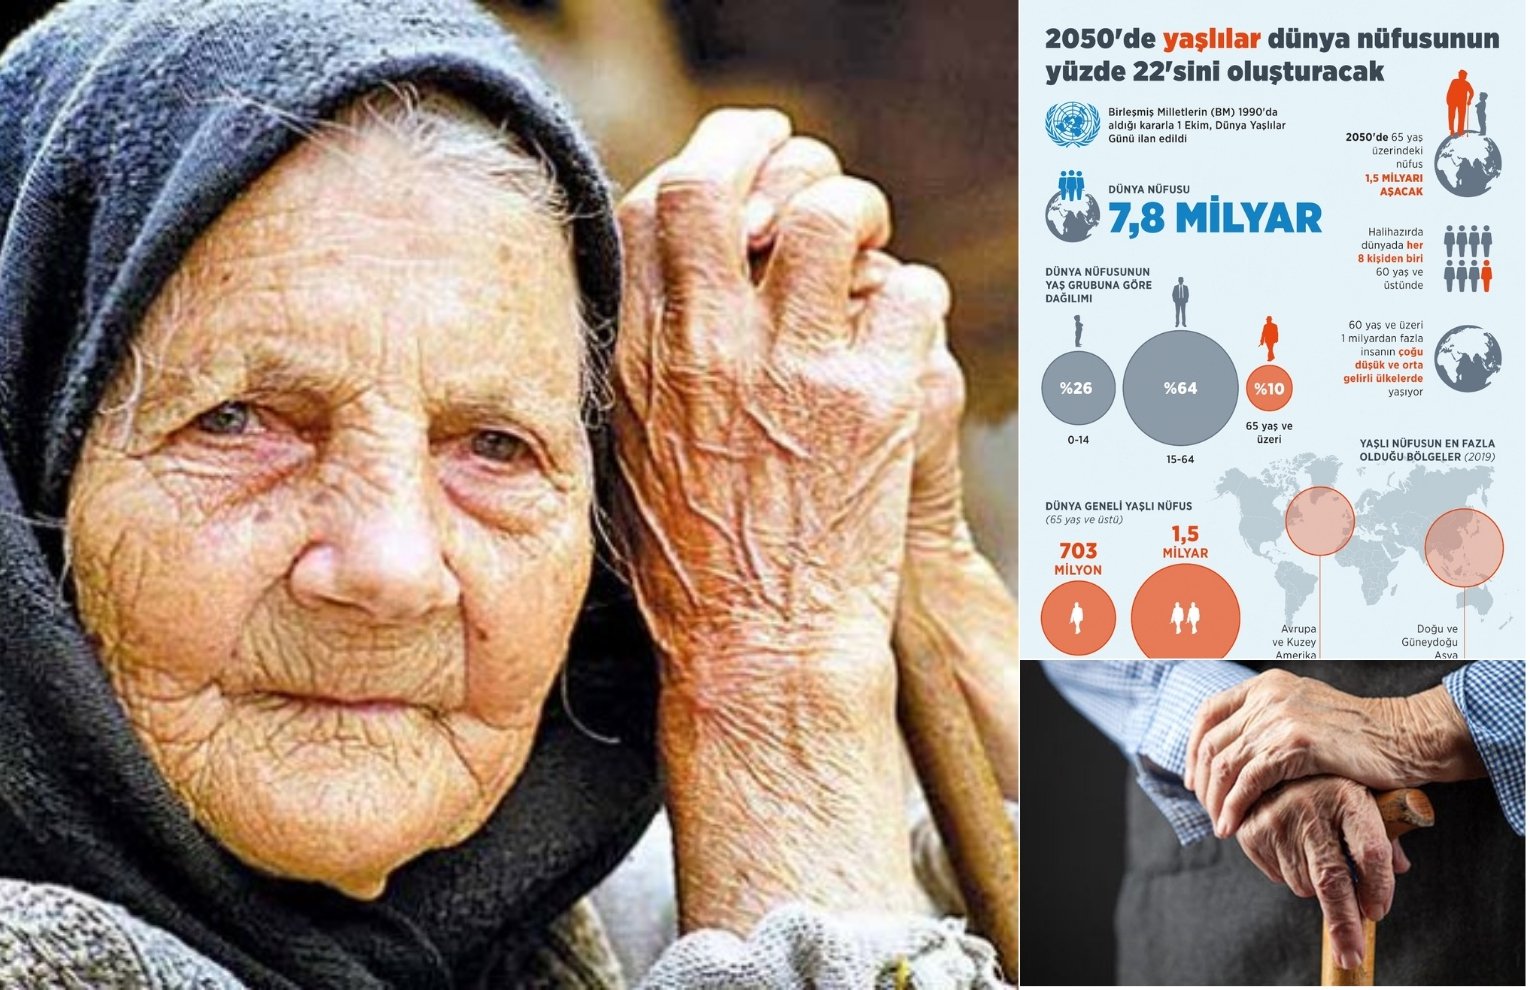 2050'de yaşlılar dünya nüfusunun yüzde 22'sini oluşturacak